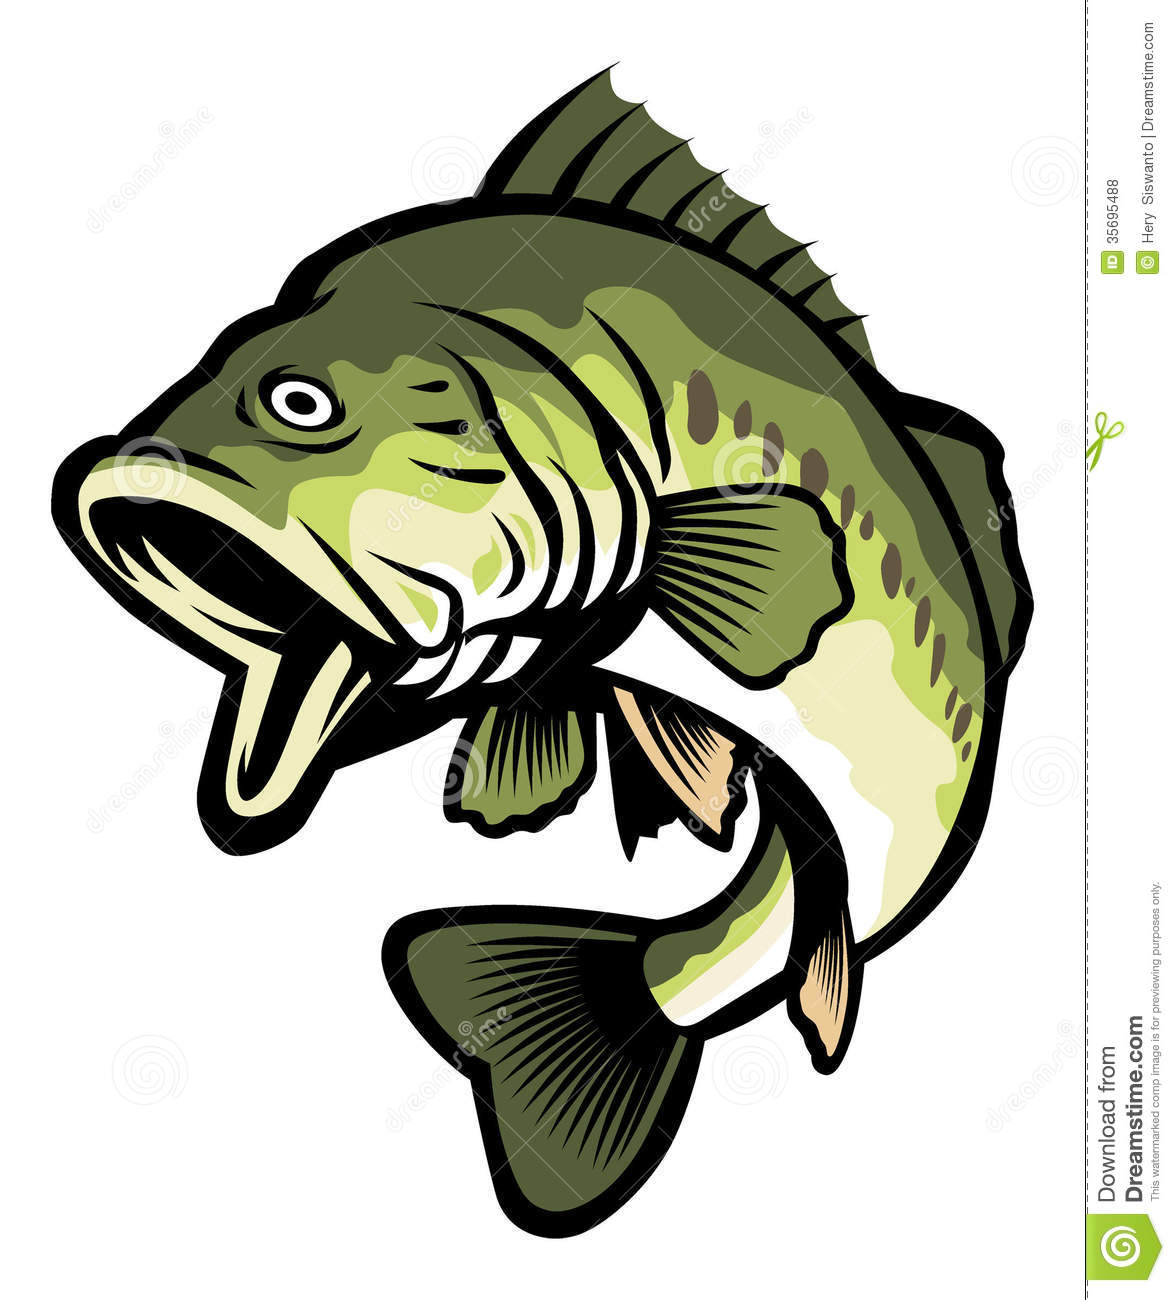 bass fish: Largemouth bass is